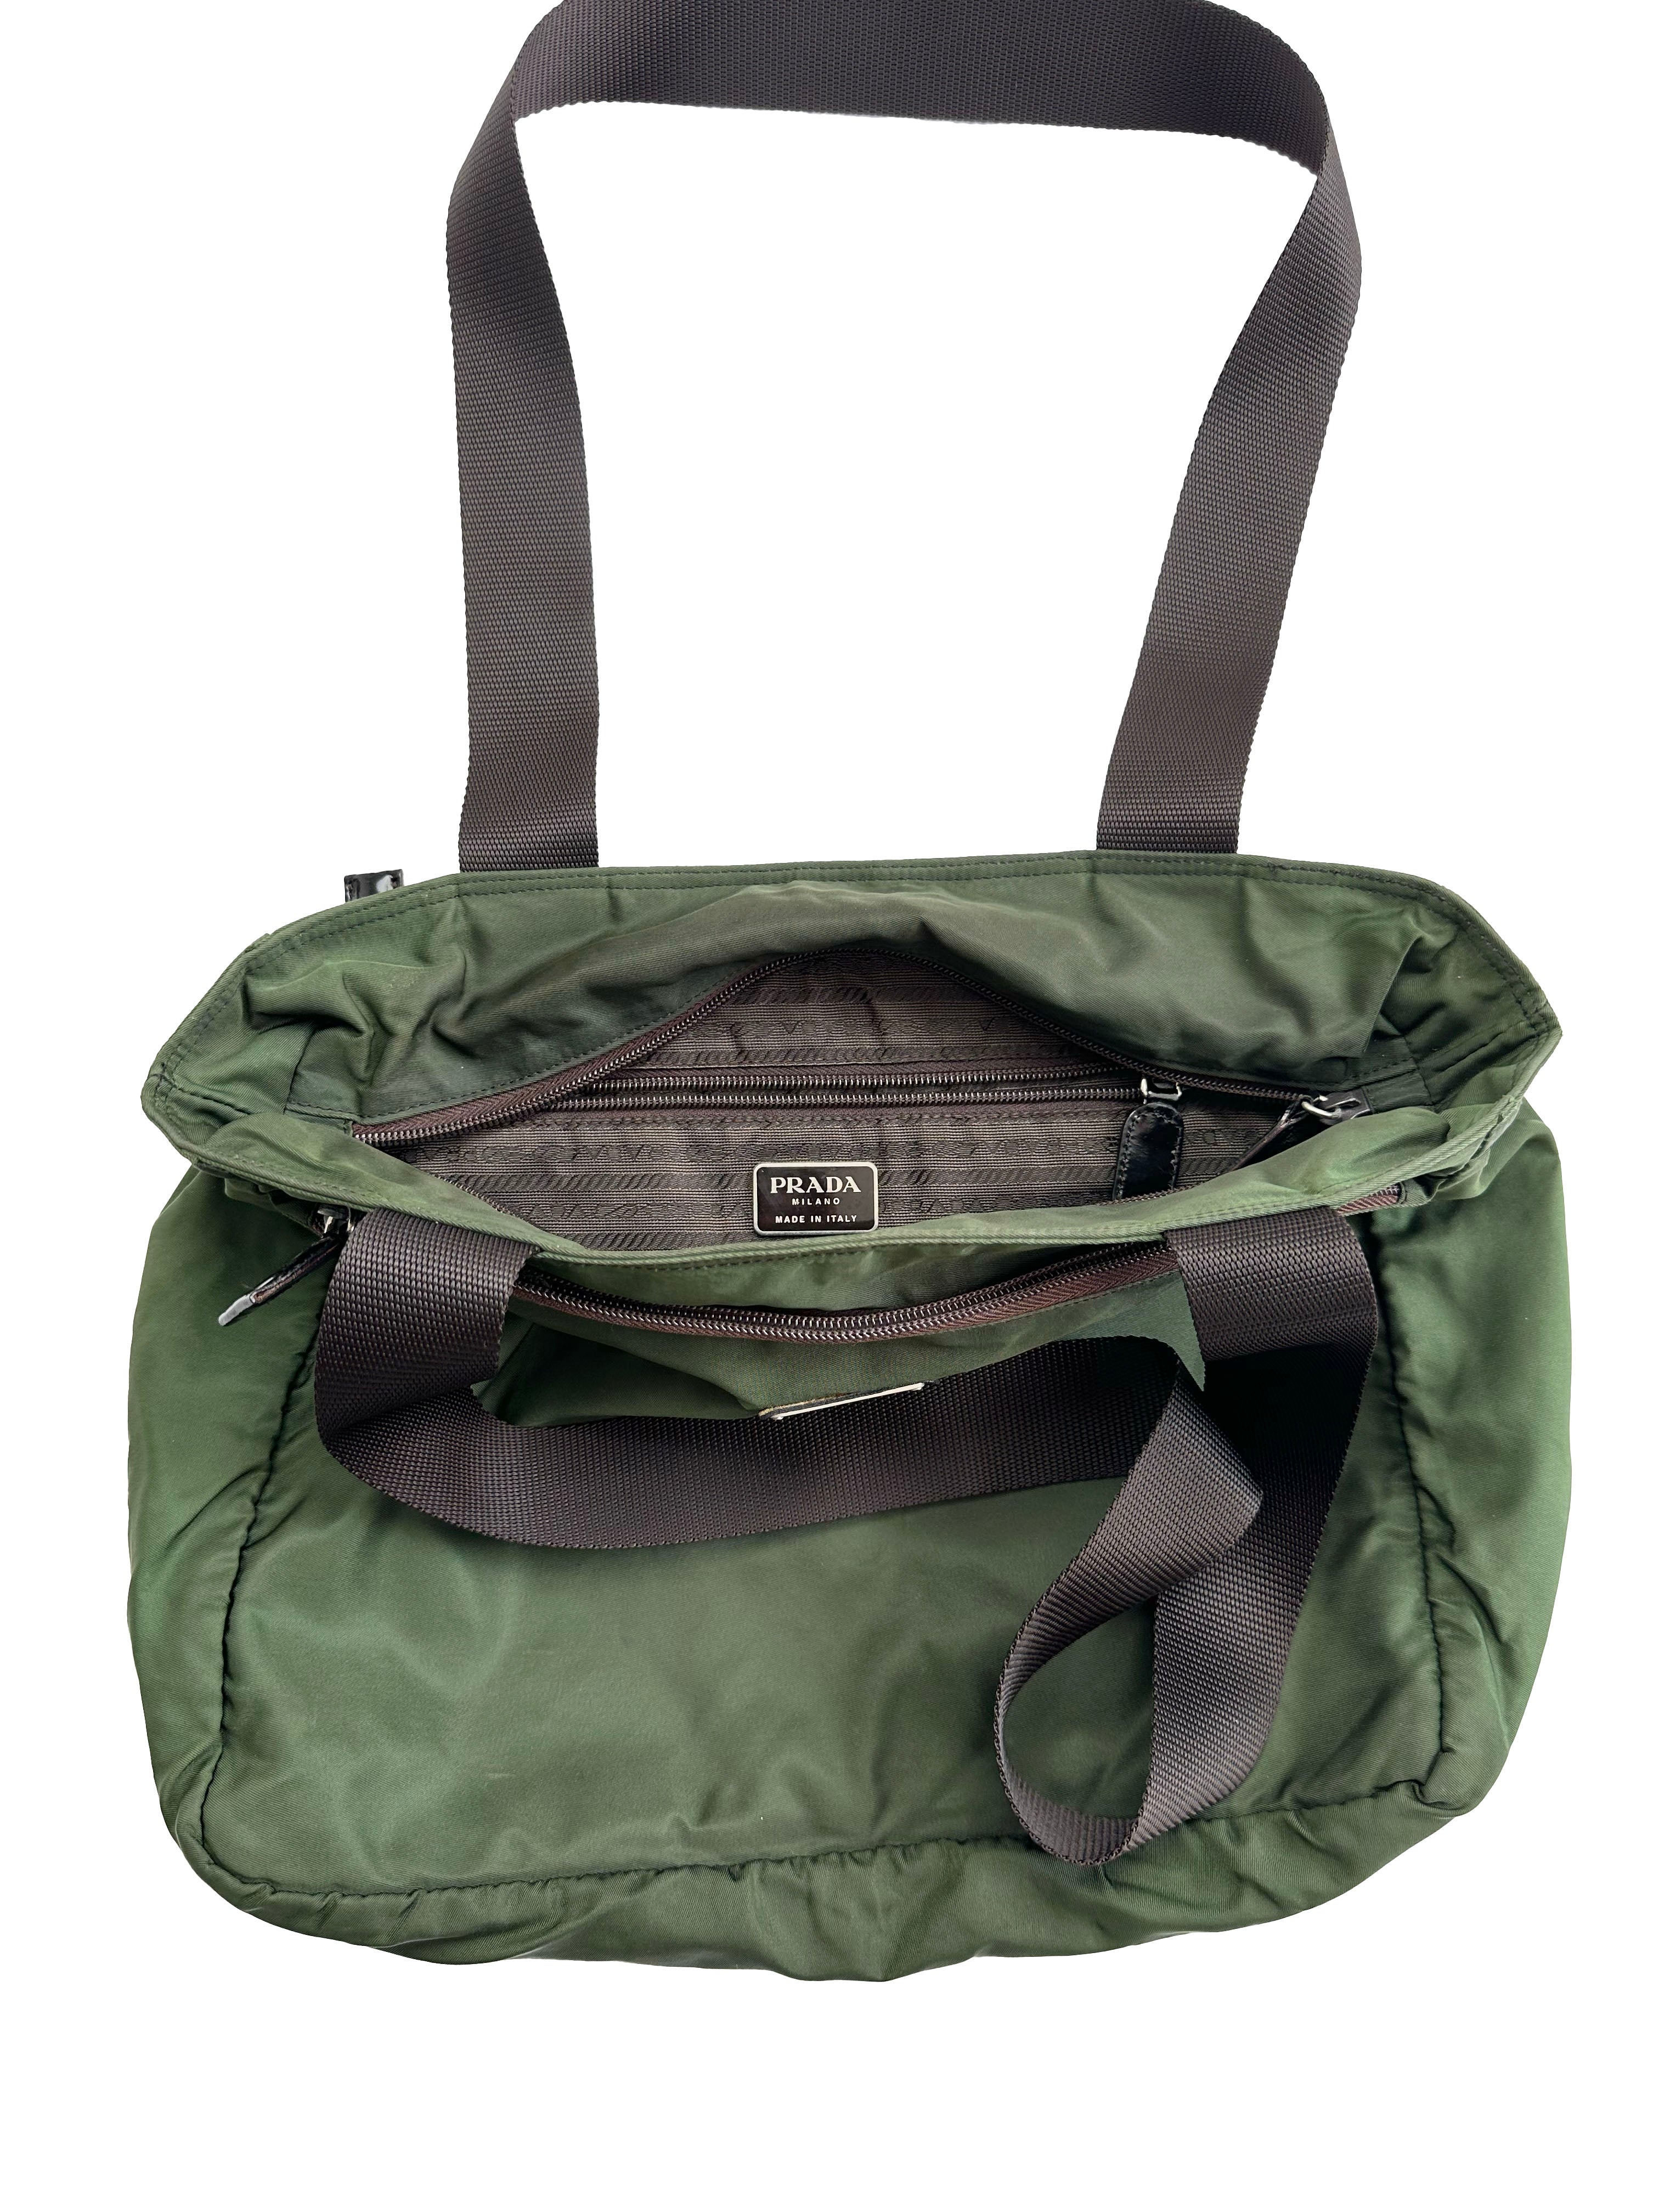 Prada Milano Green Tote Bag 00's